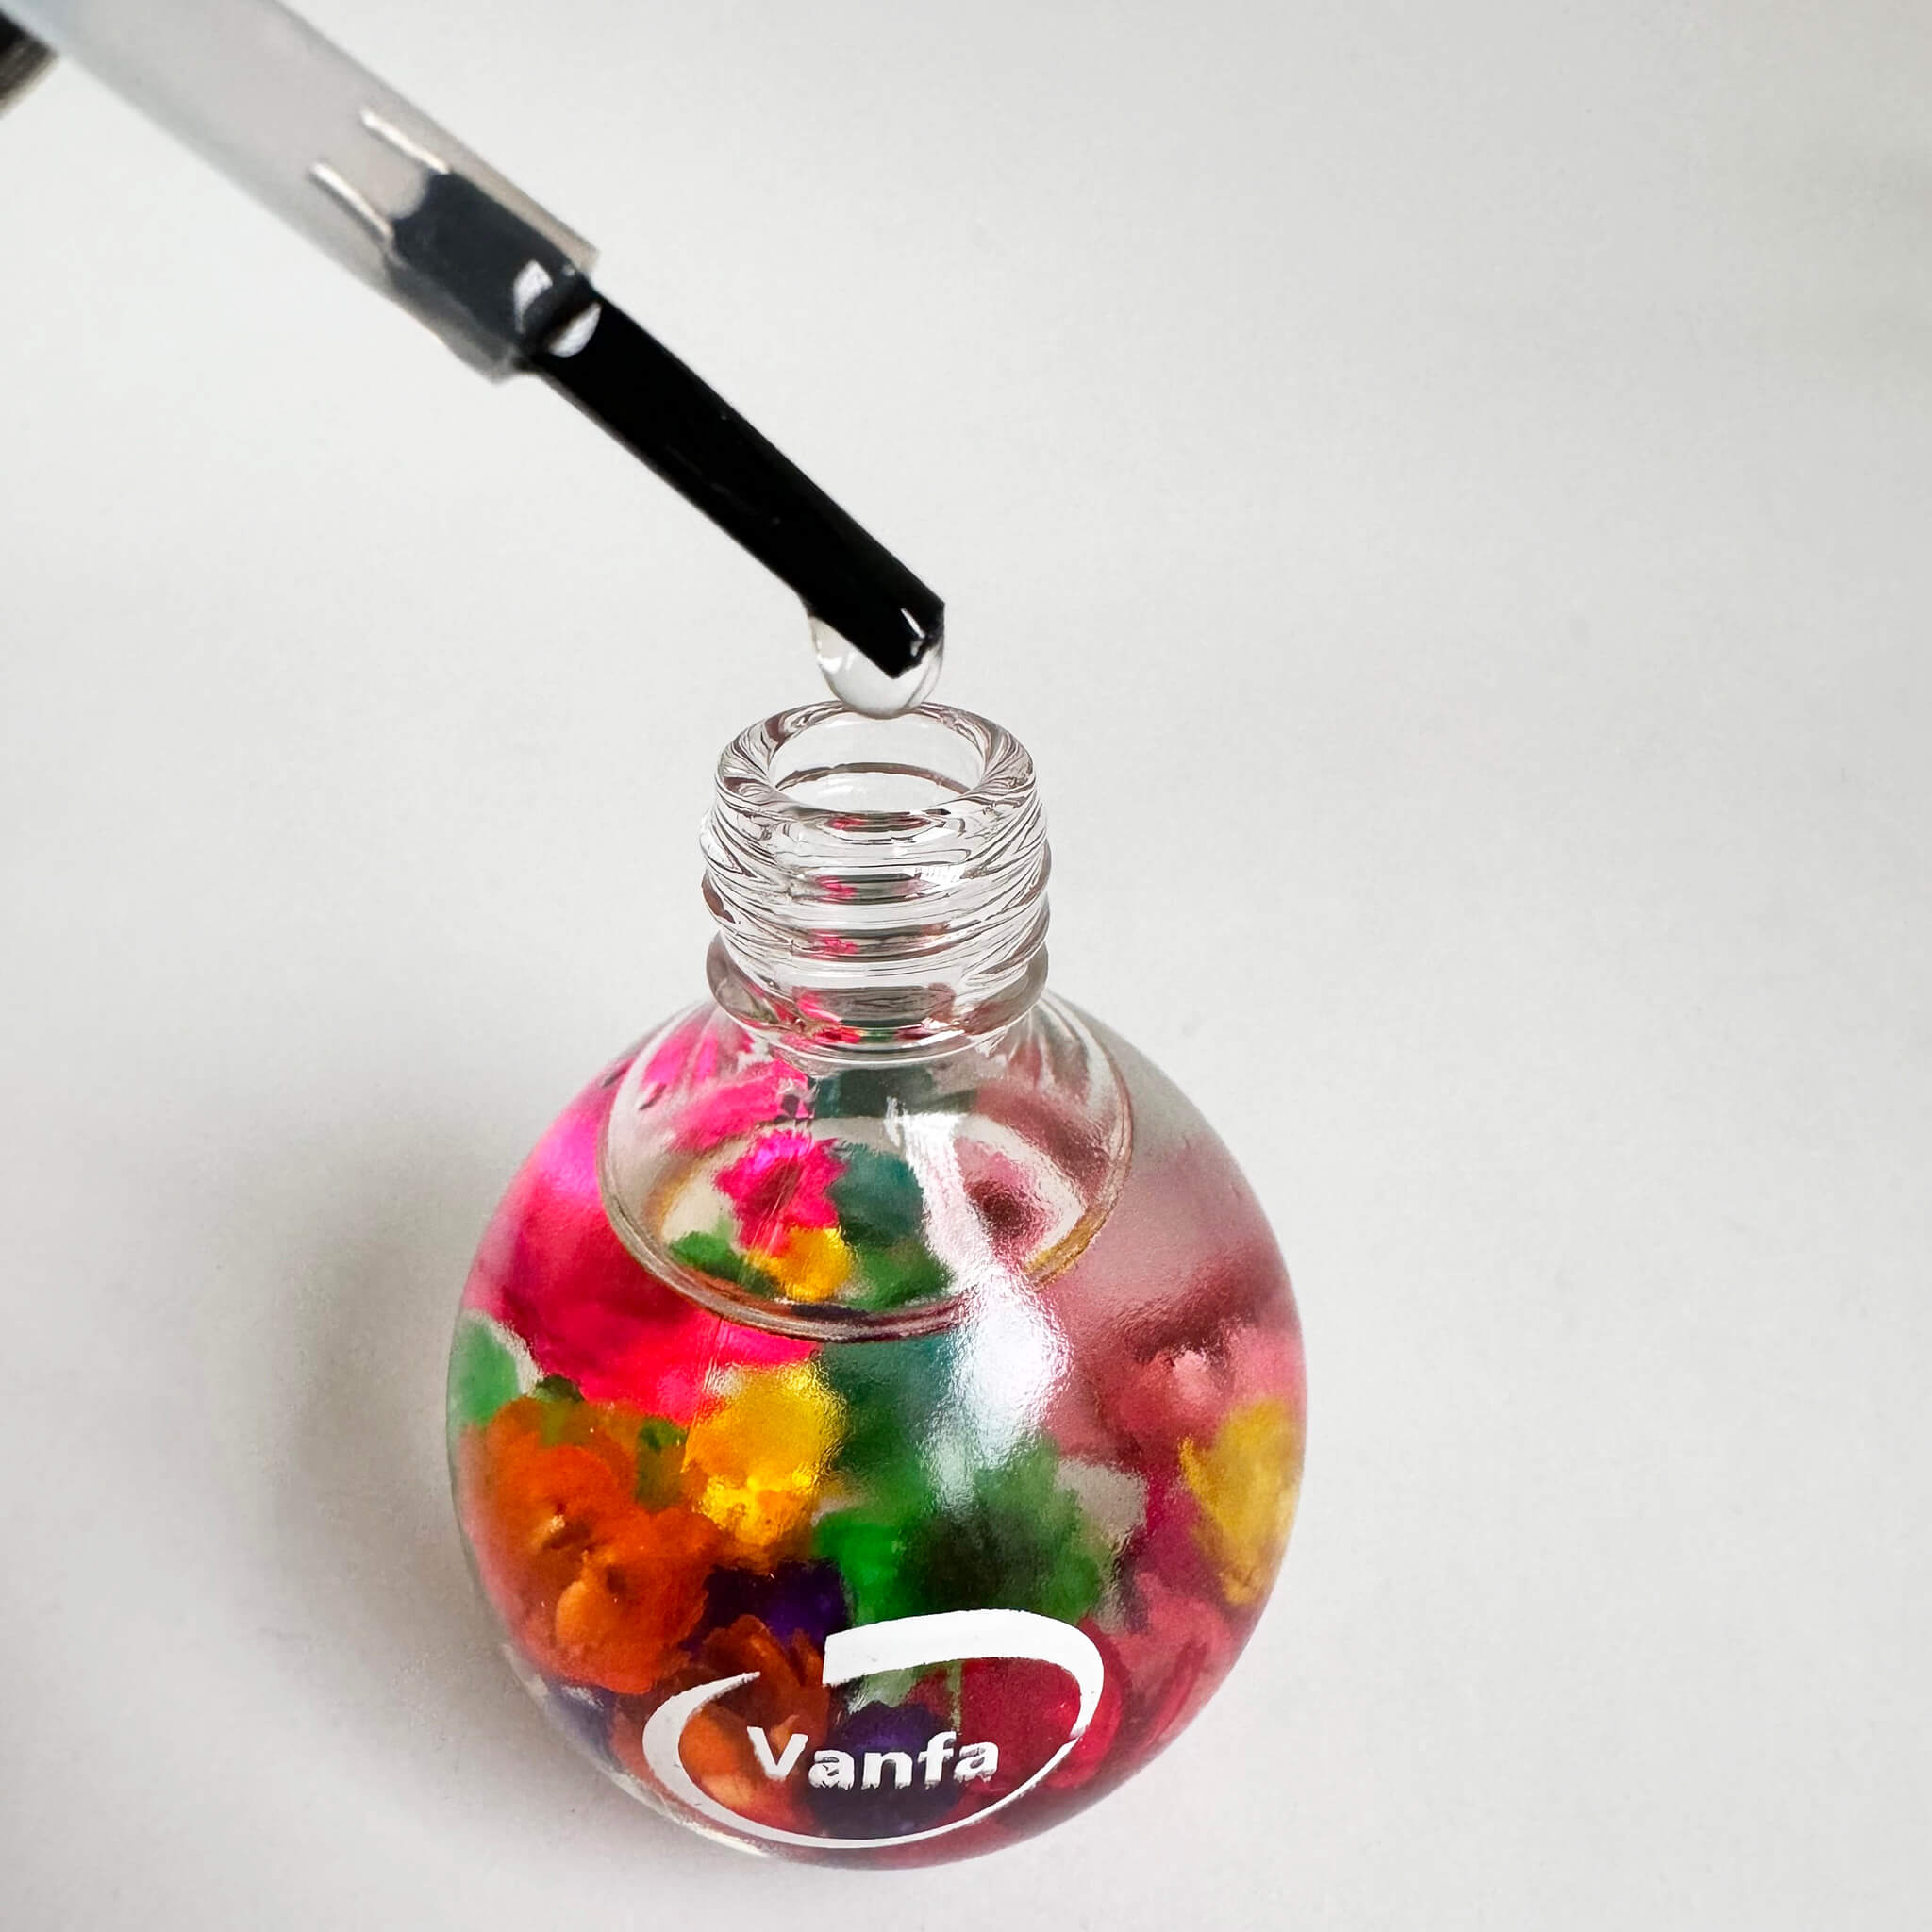 VANFA Cuticle Oil infused with real flower 0.42 Oz - Jasmine